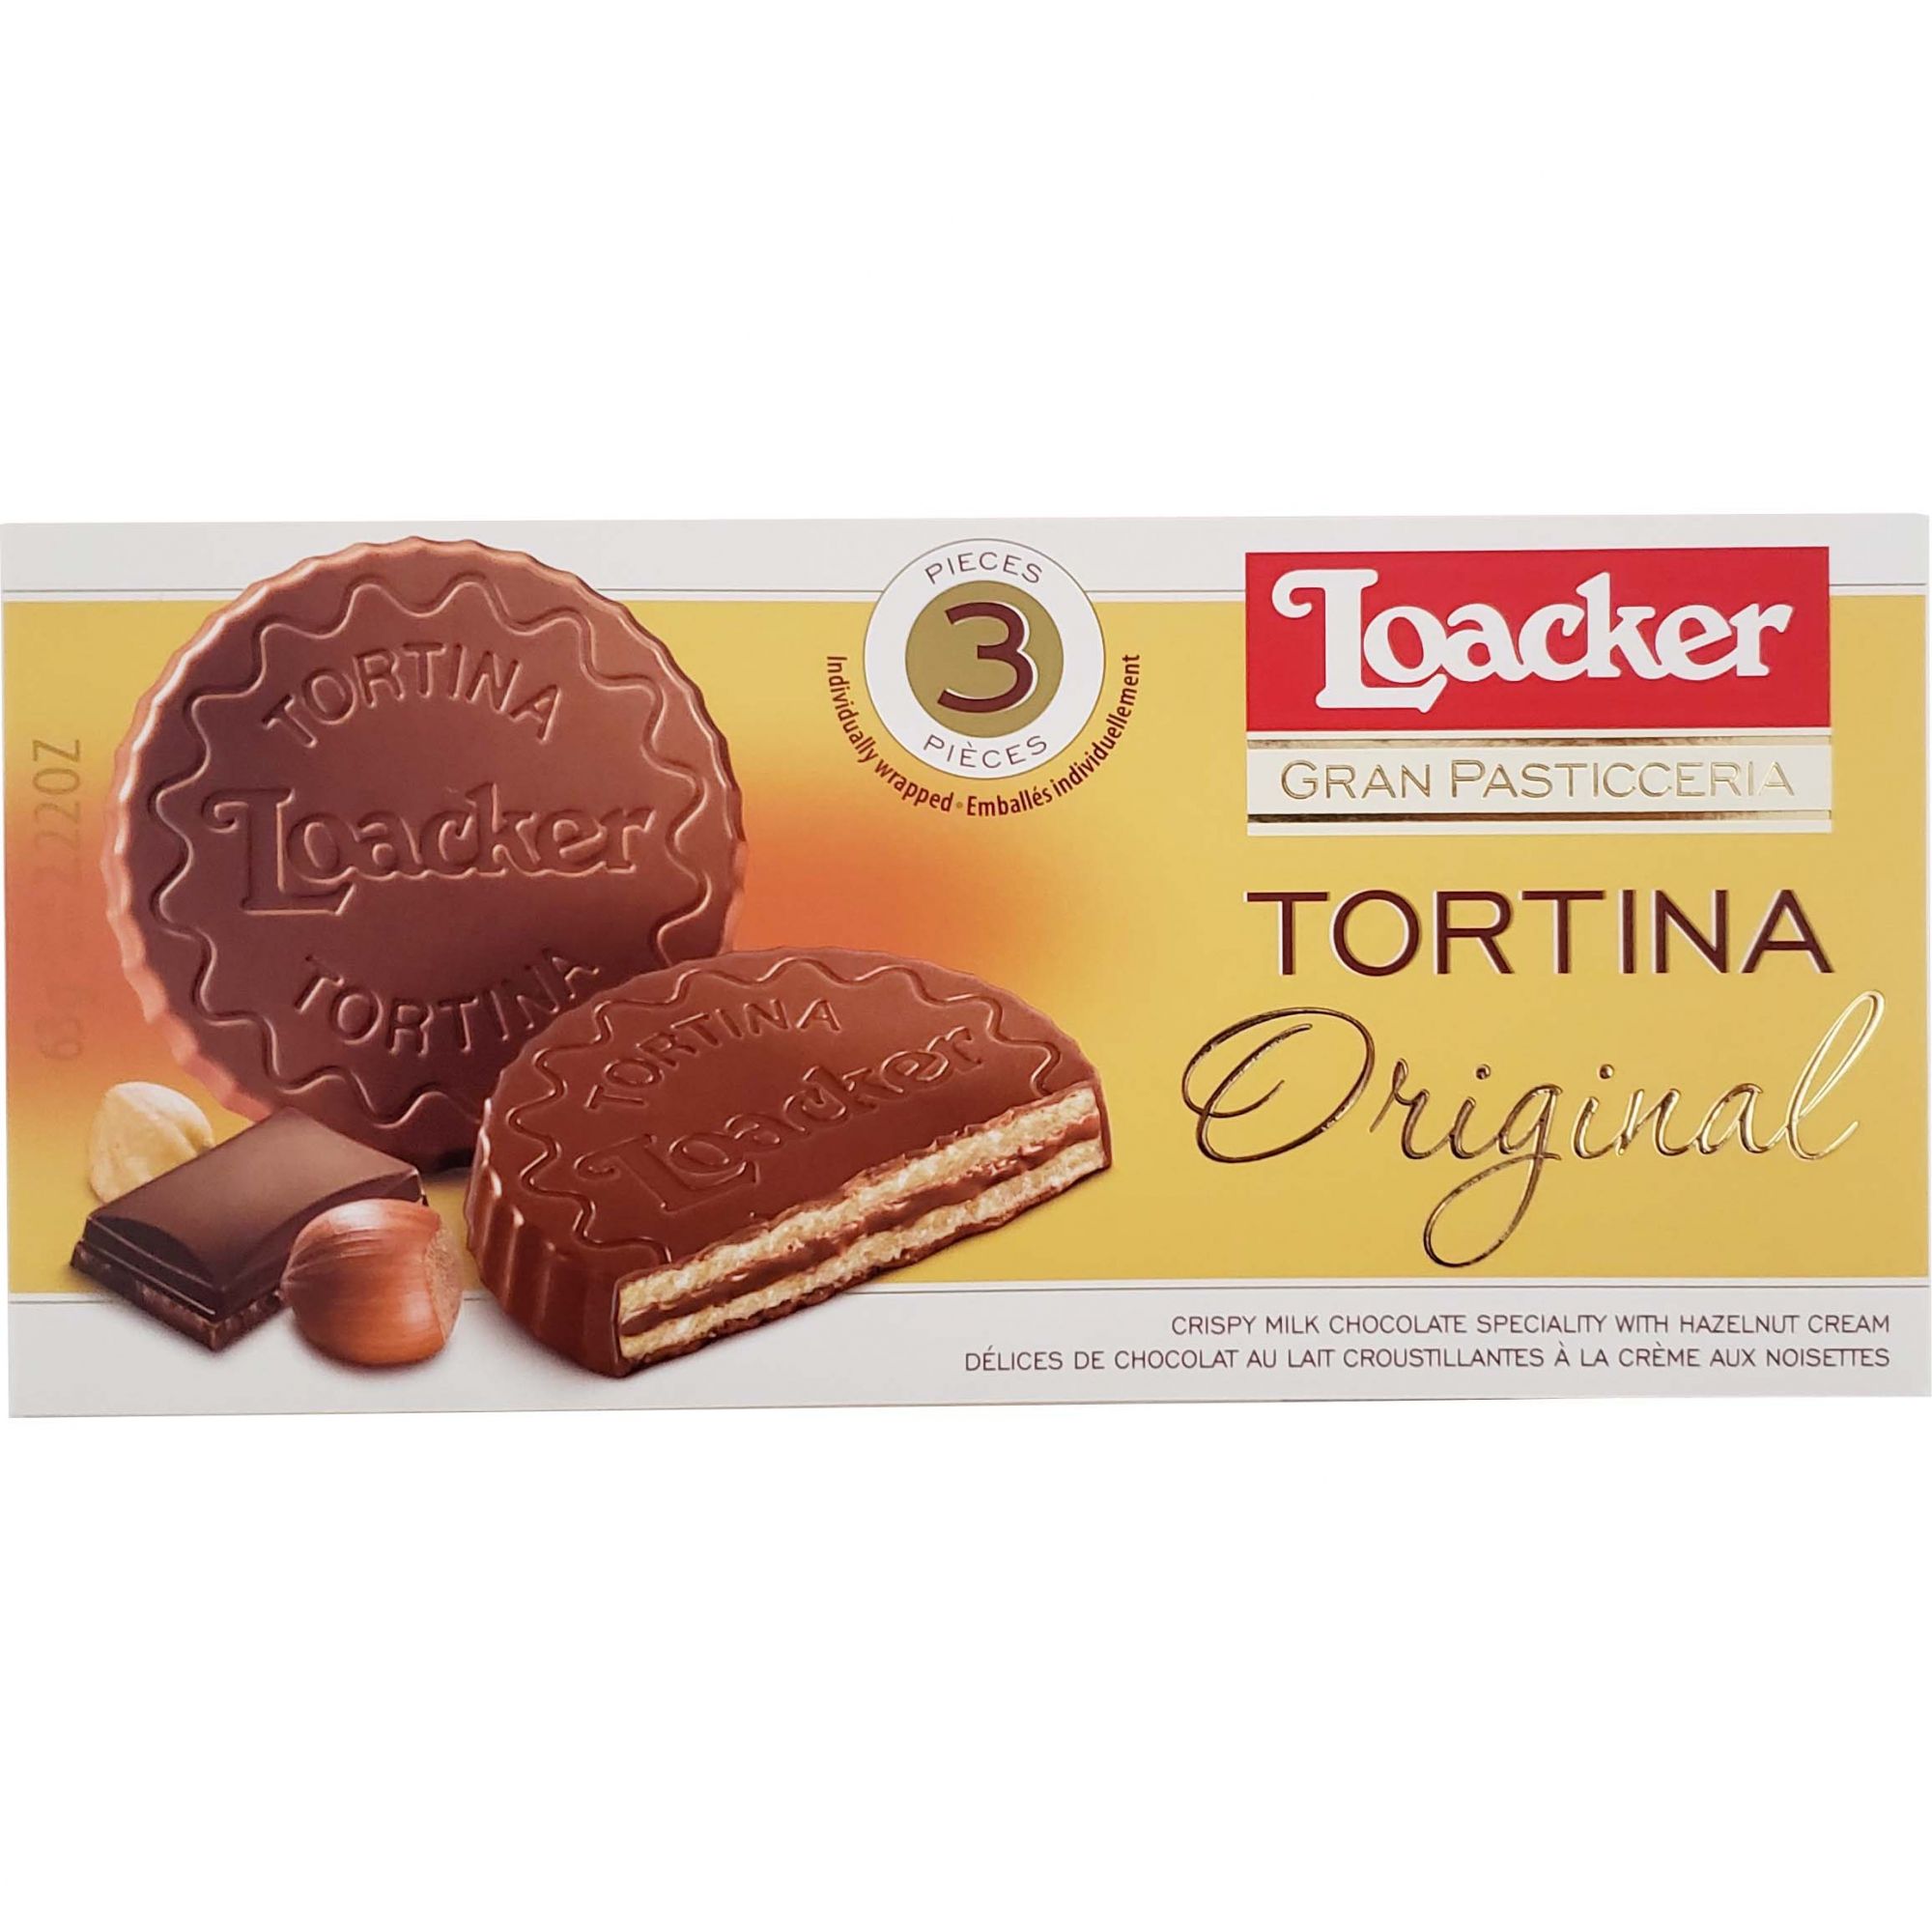 Biscoito Wafer Tortina Original Loacker - 63g -